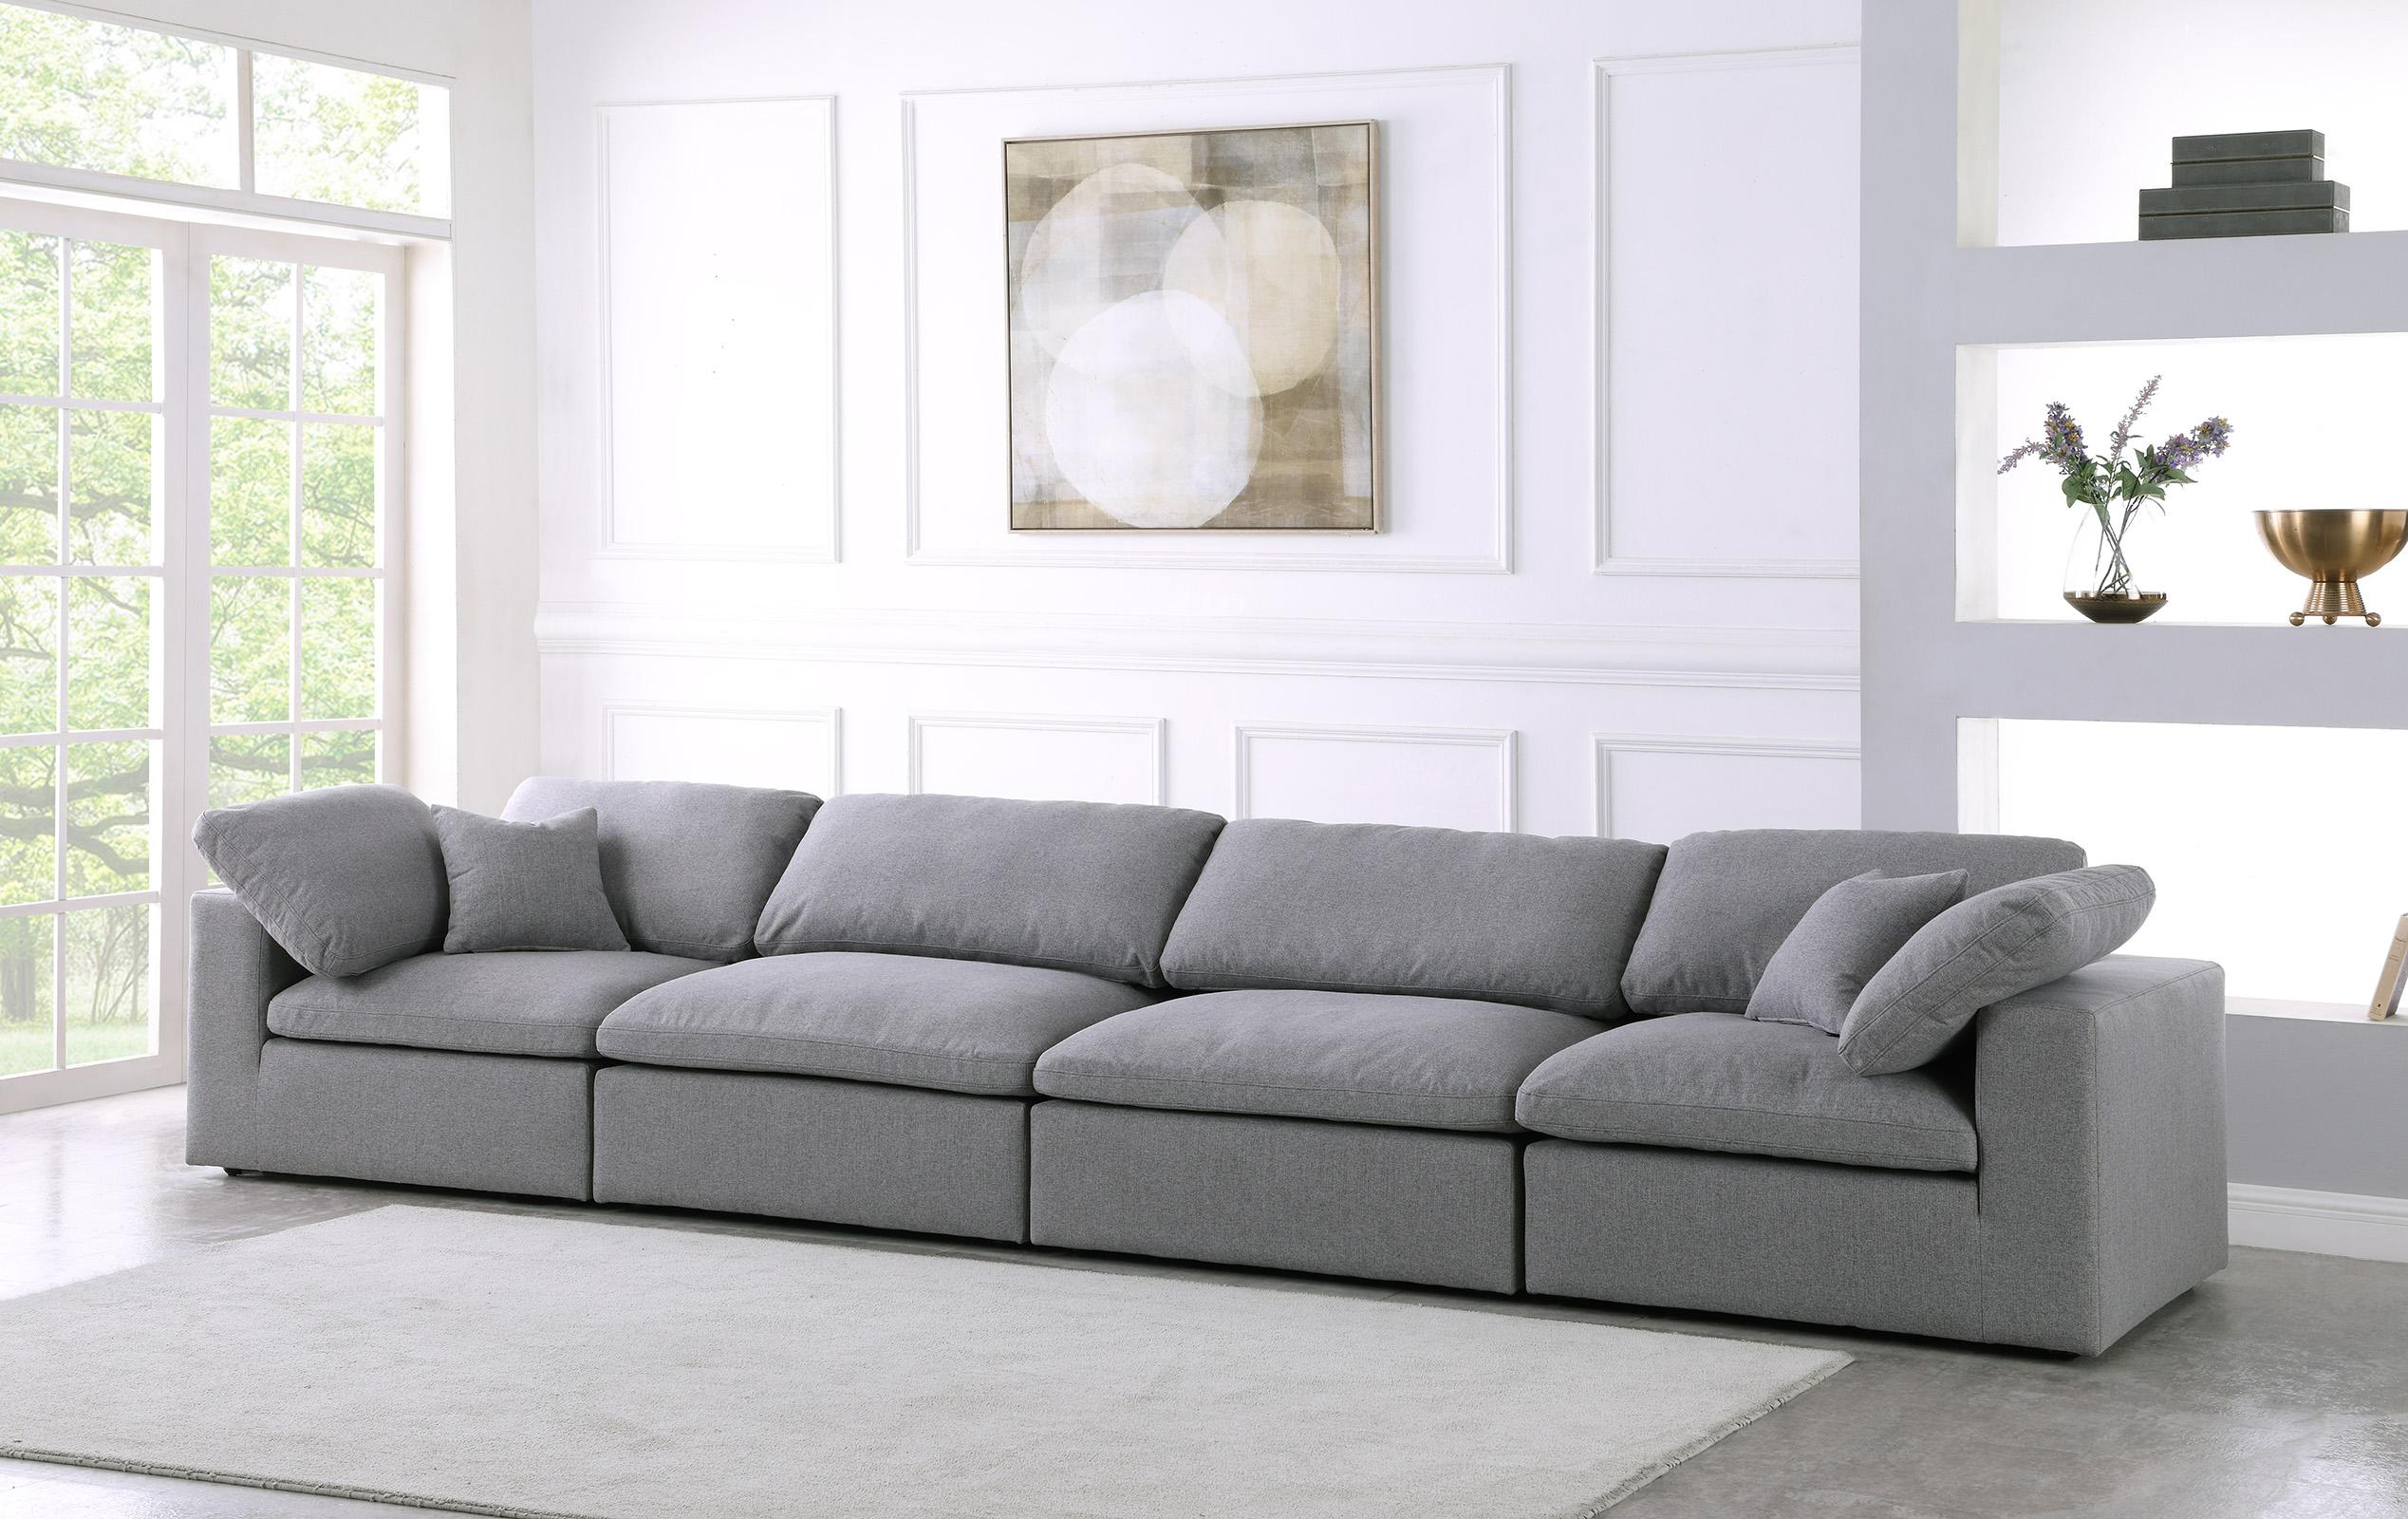 

    
Serene Grey Linen Textured Fabric Deluxe Comfort Modular Sofa S158 Meridian
